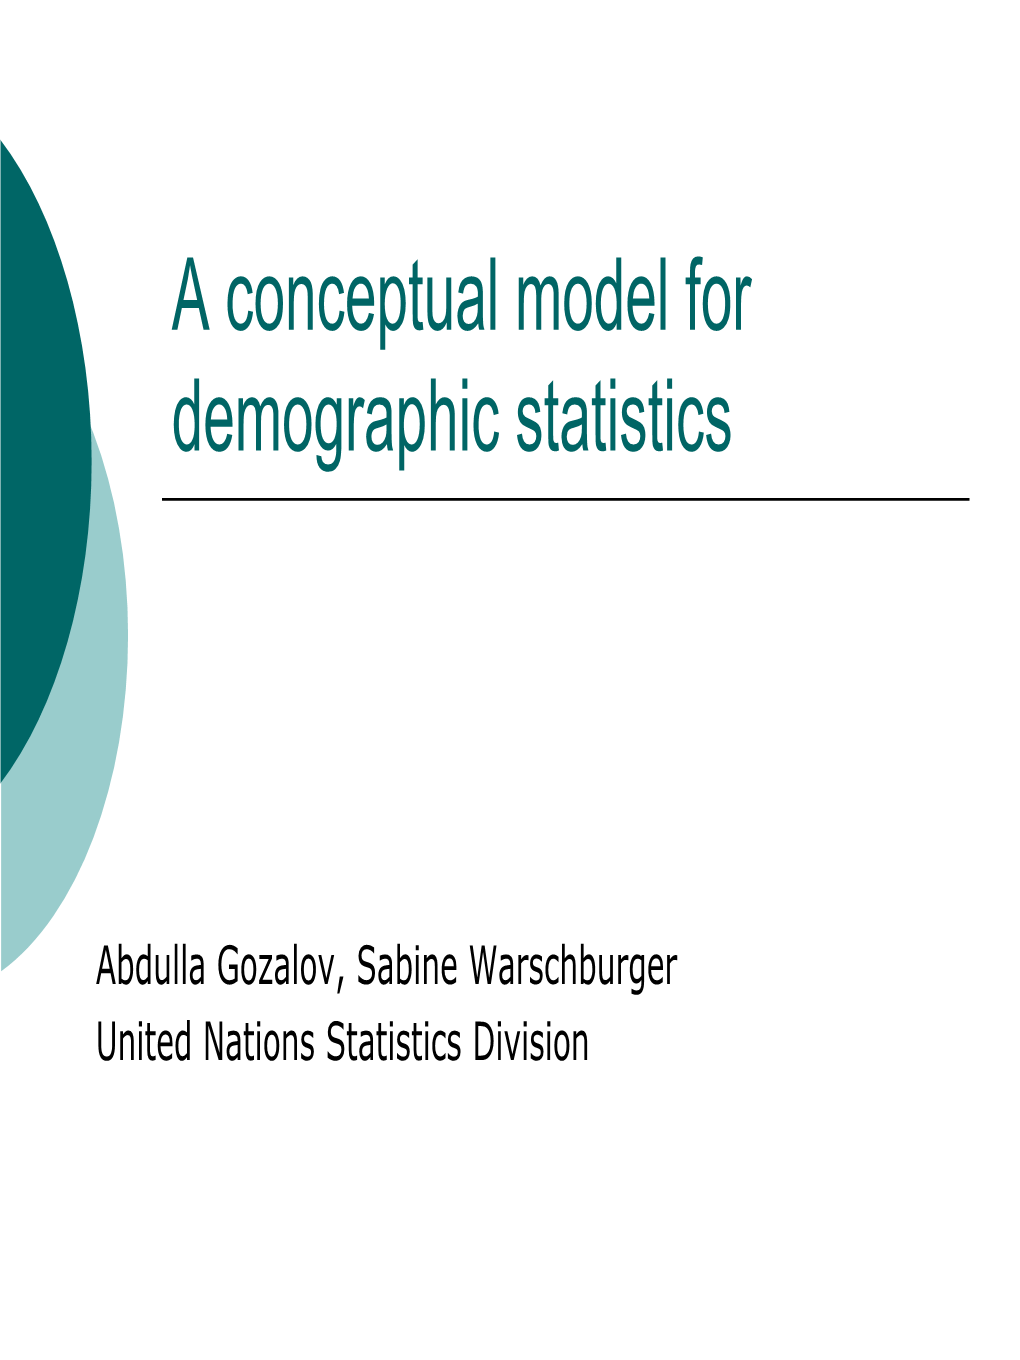 A Conceptual Model for Demographic Statistics